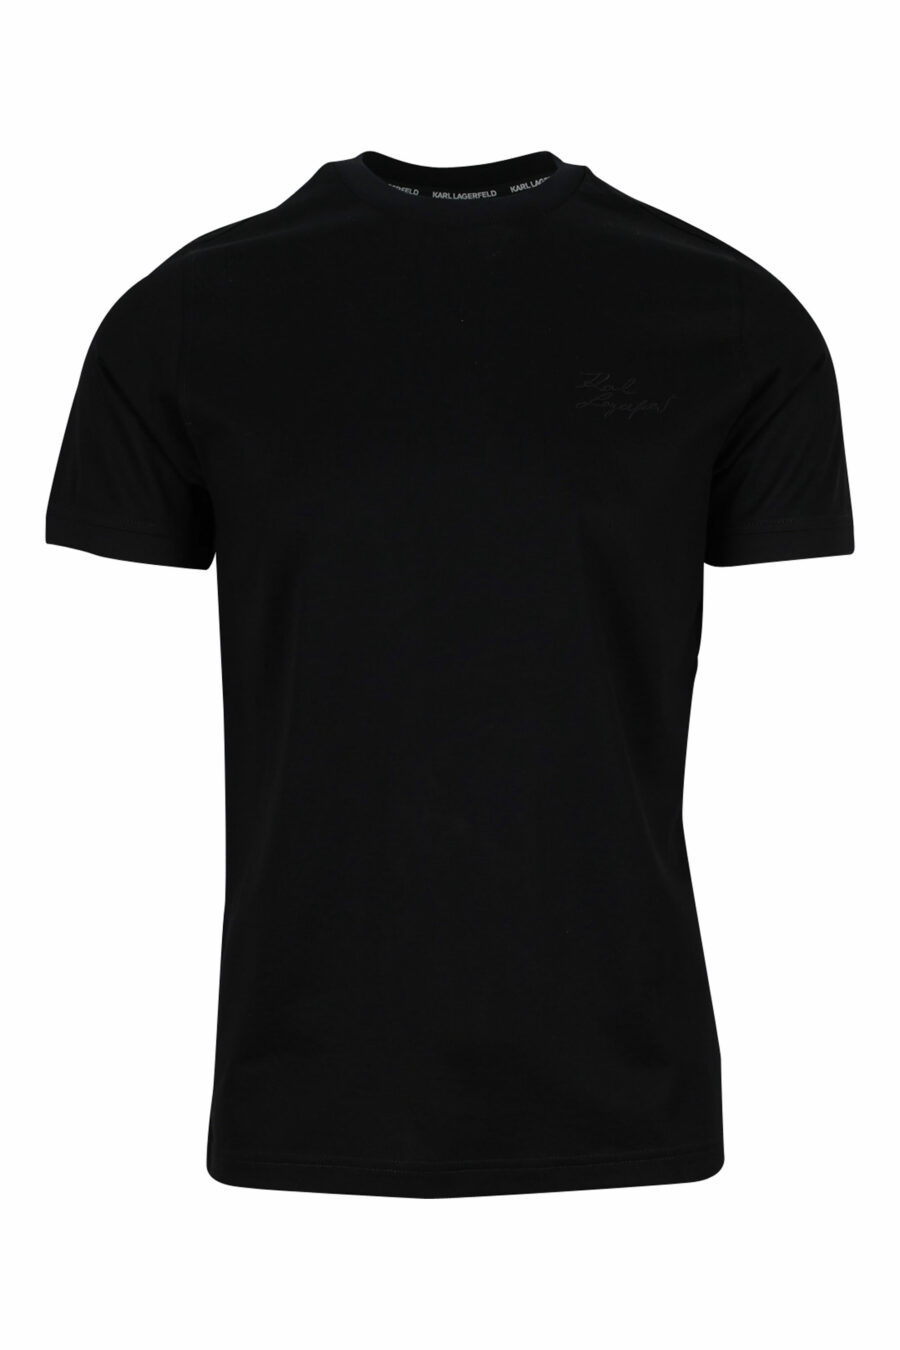 Polo Ralph Lauren - Camiseta azul oscuro con minilogo polo - BLS Fashion